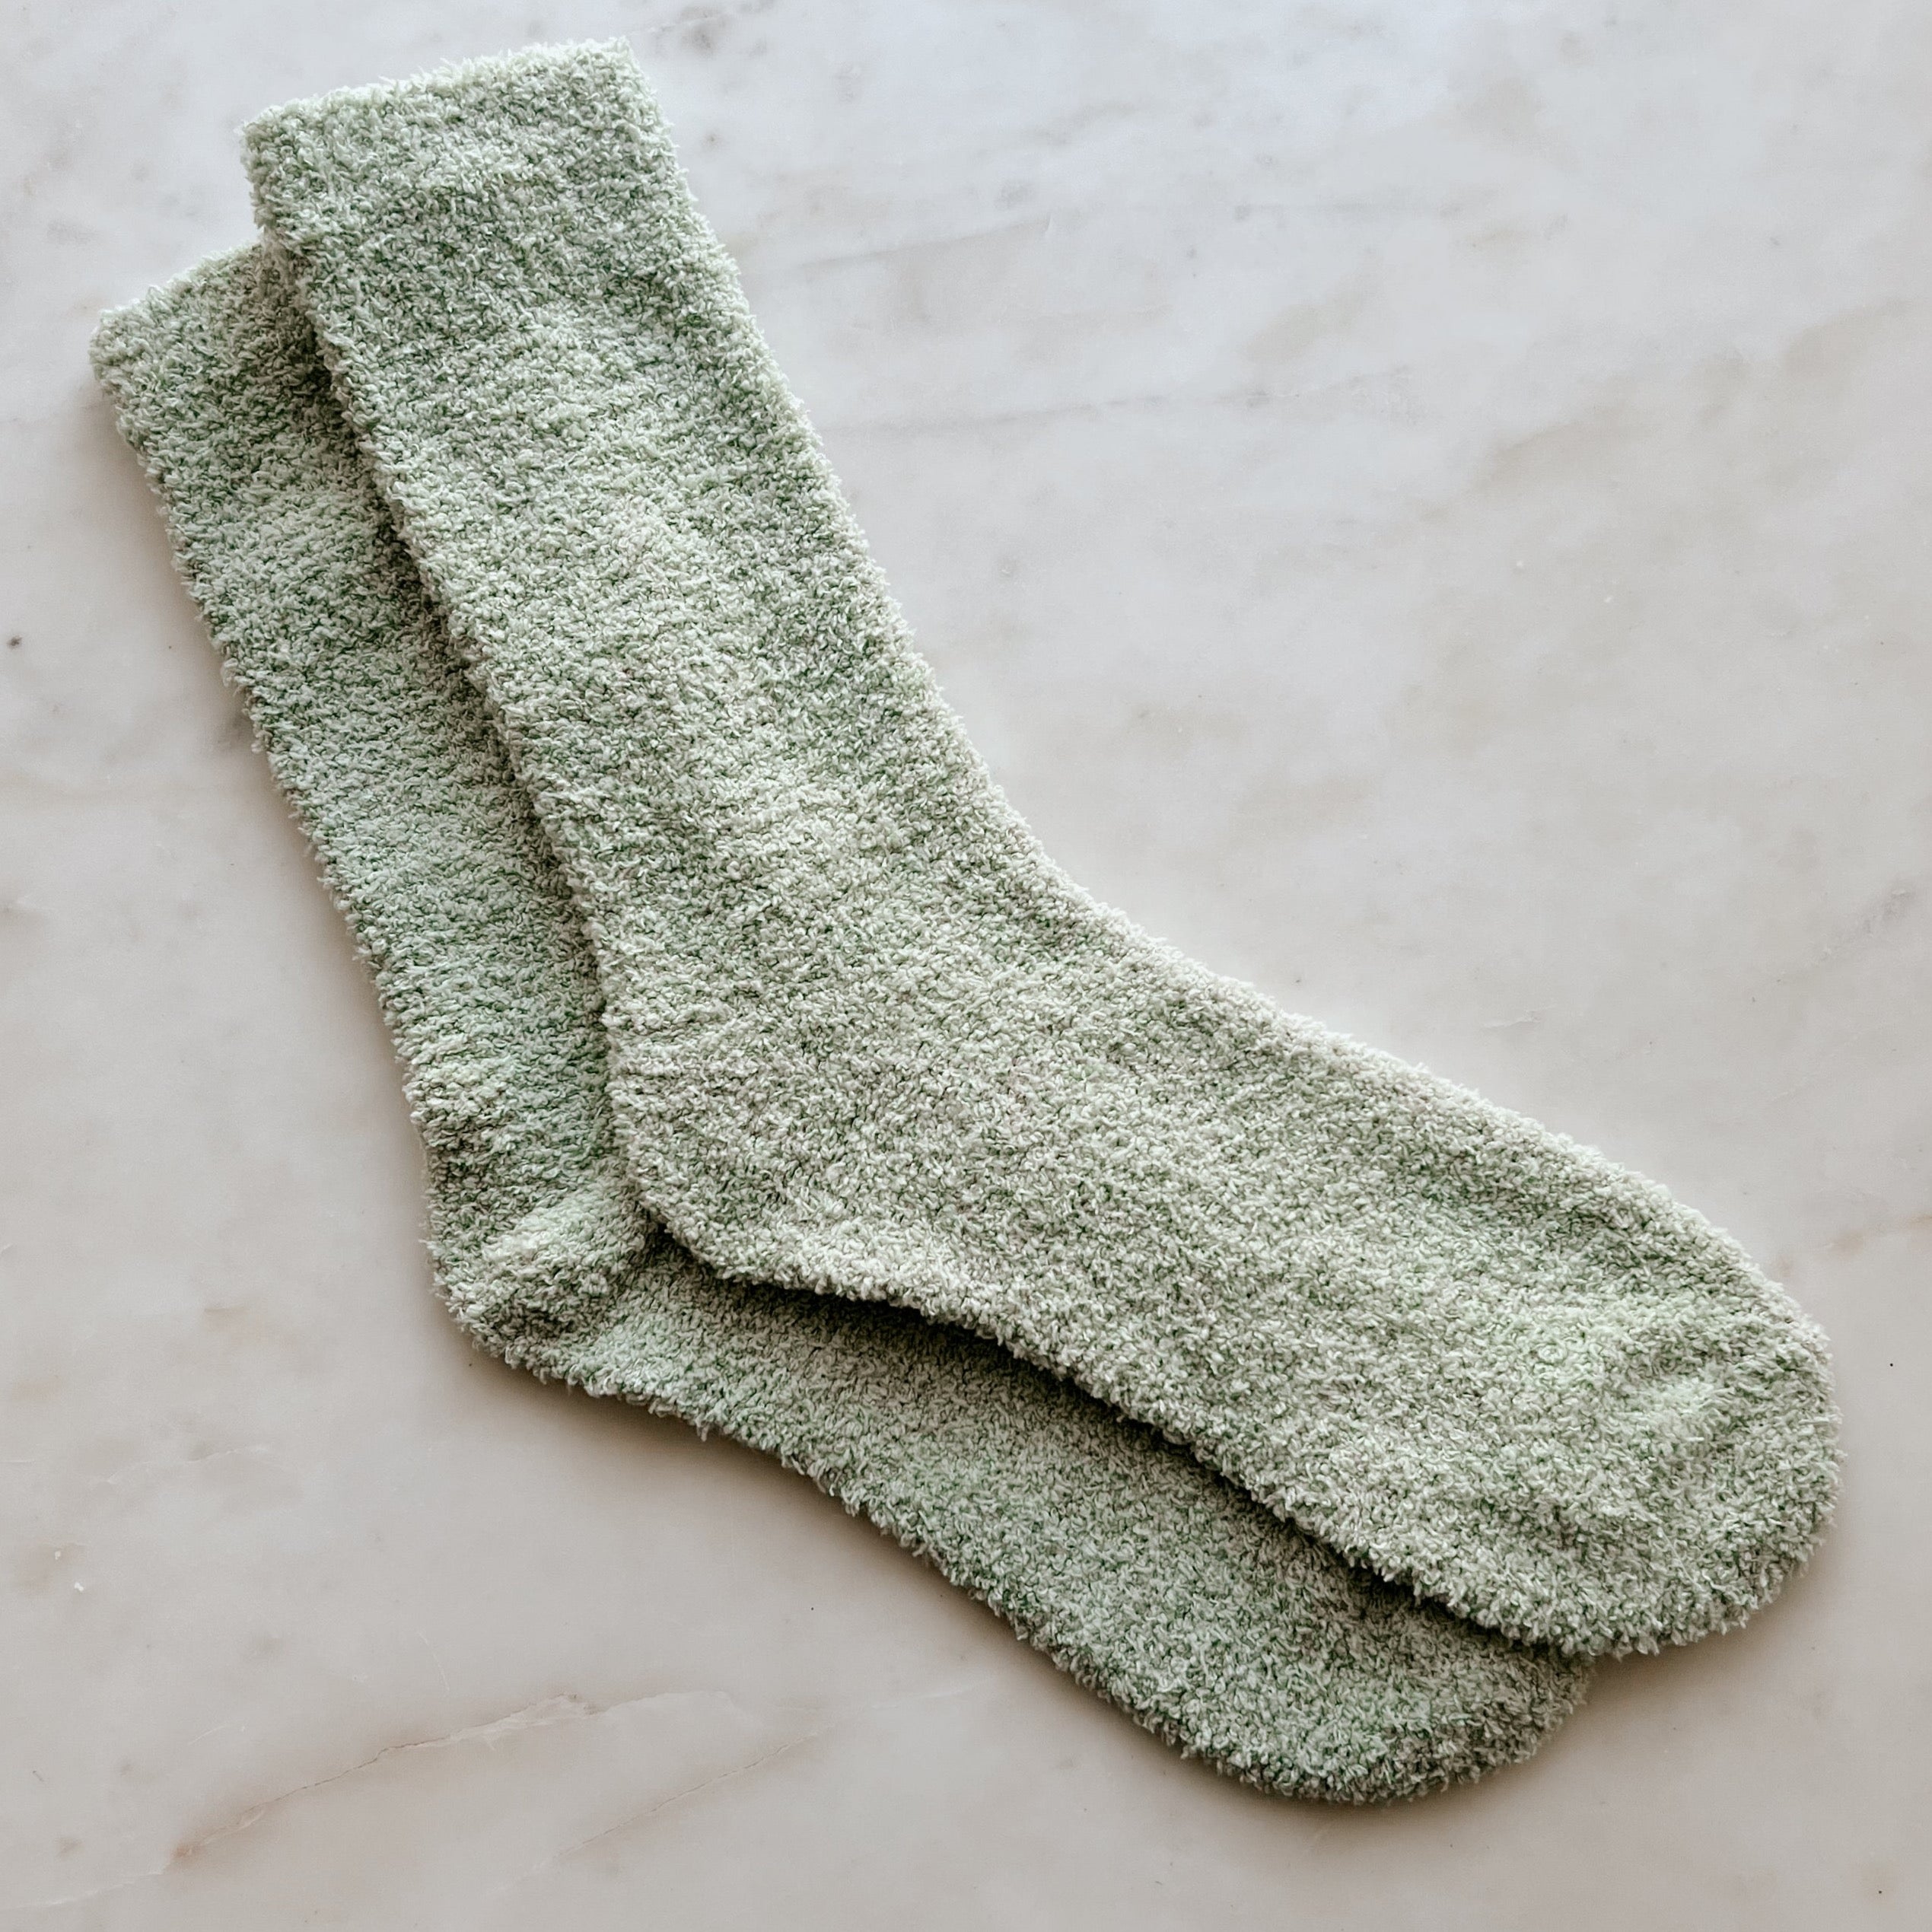 flat green socks